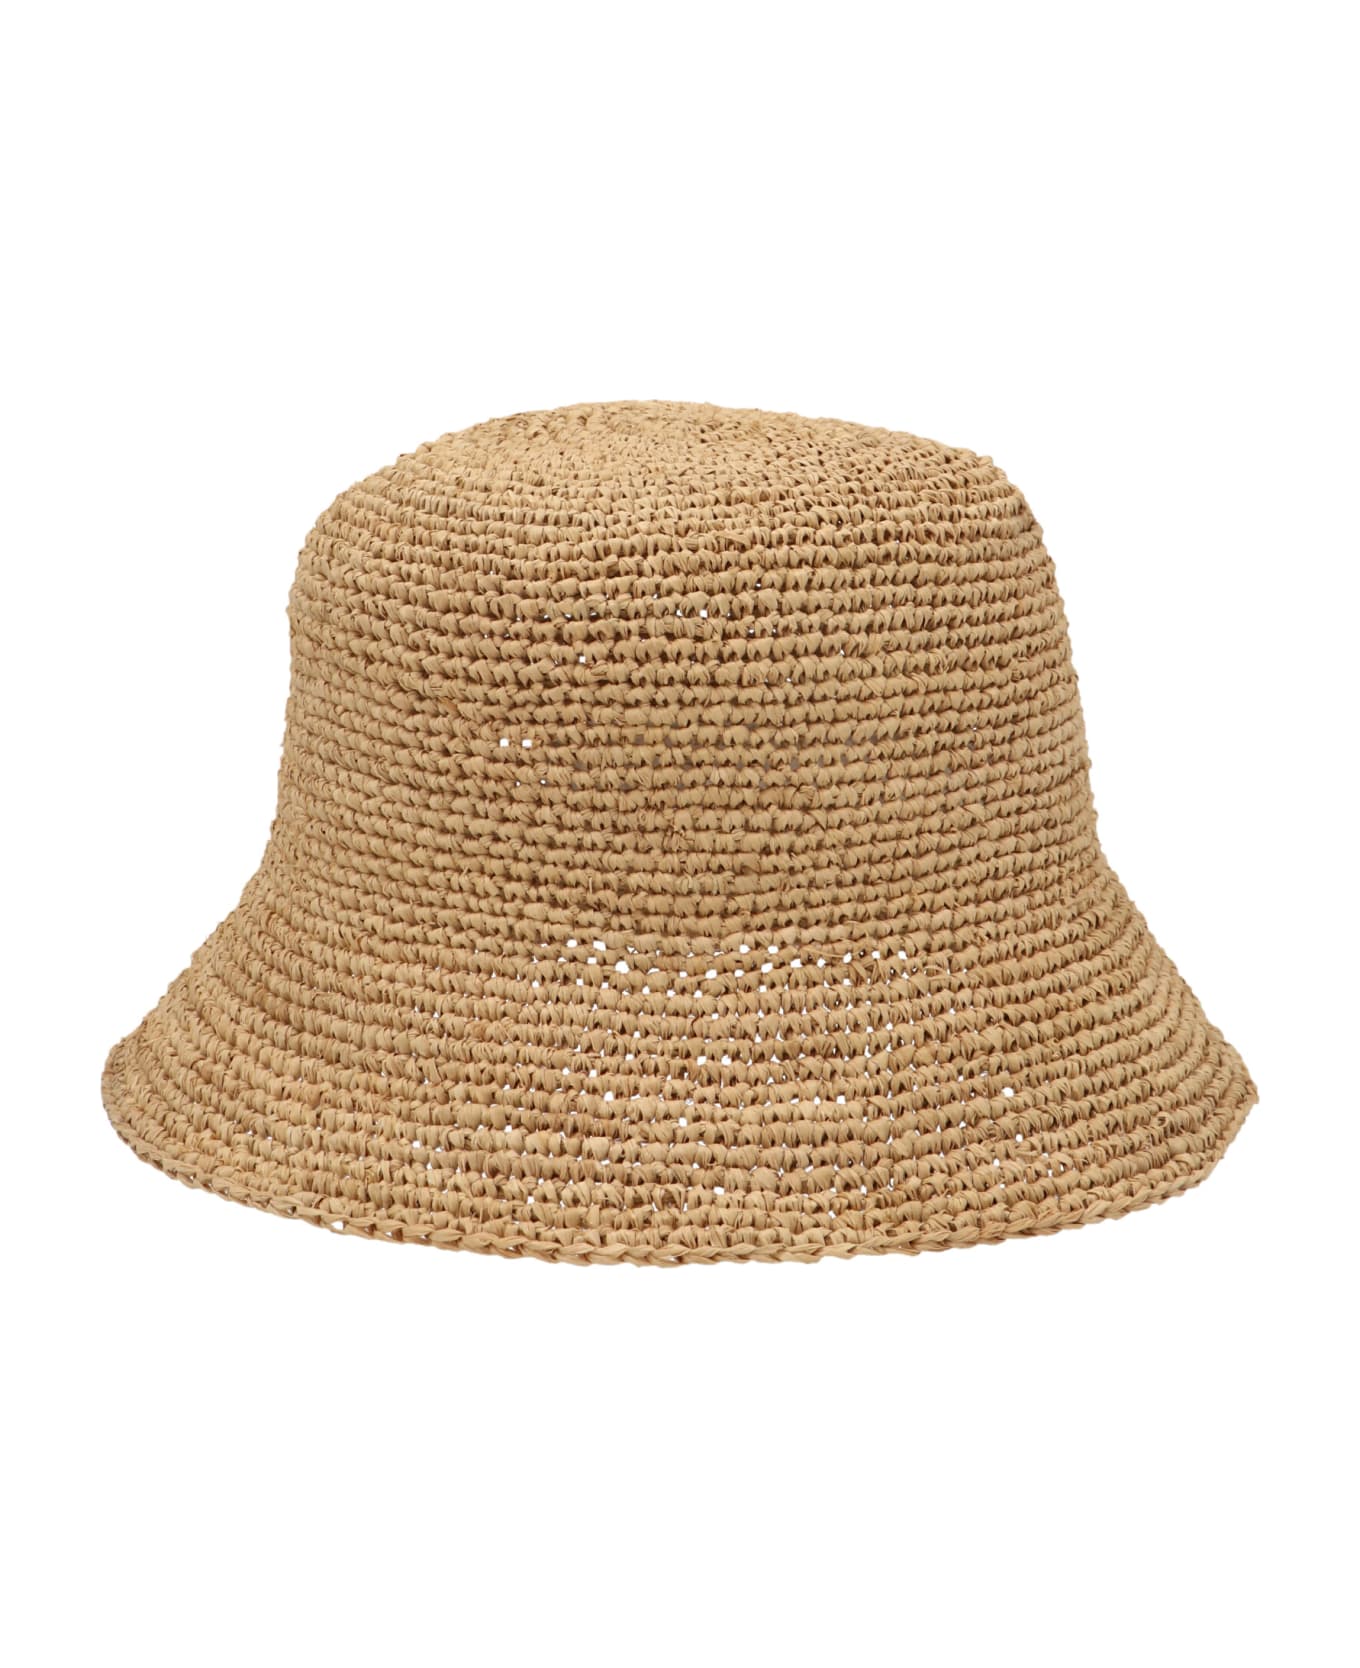 Ibeliv Andao Bucket Hat - Beige 帽子